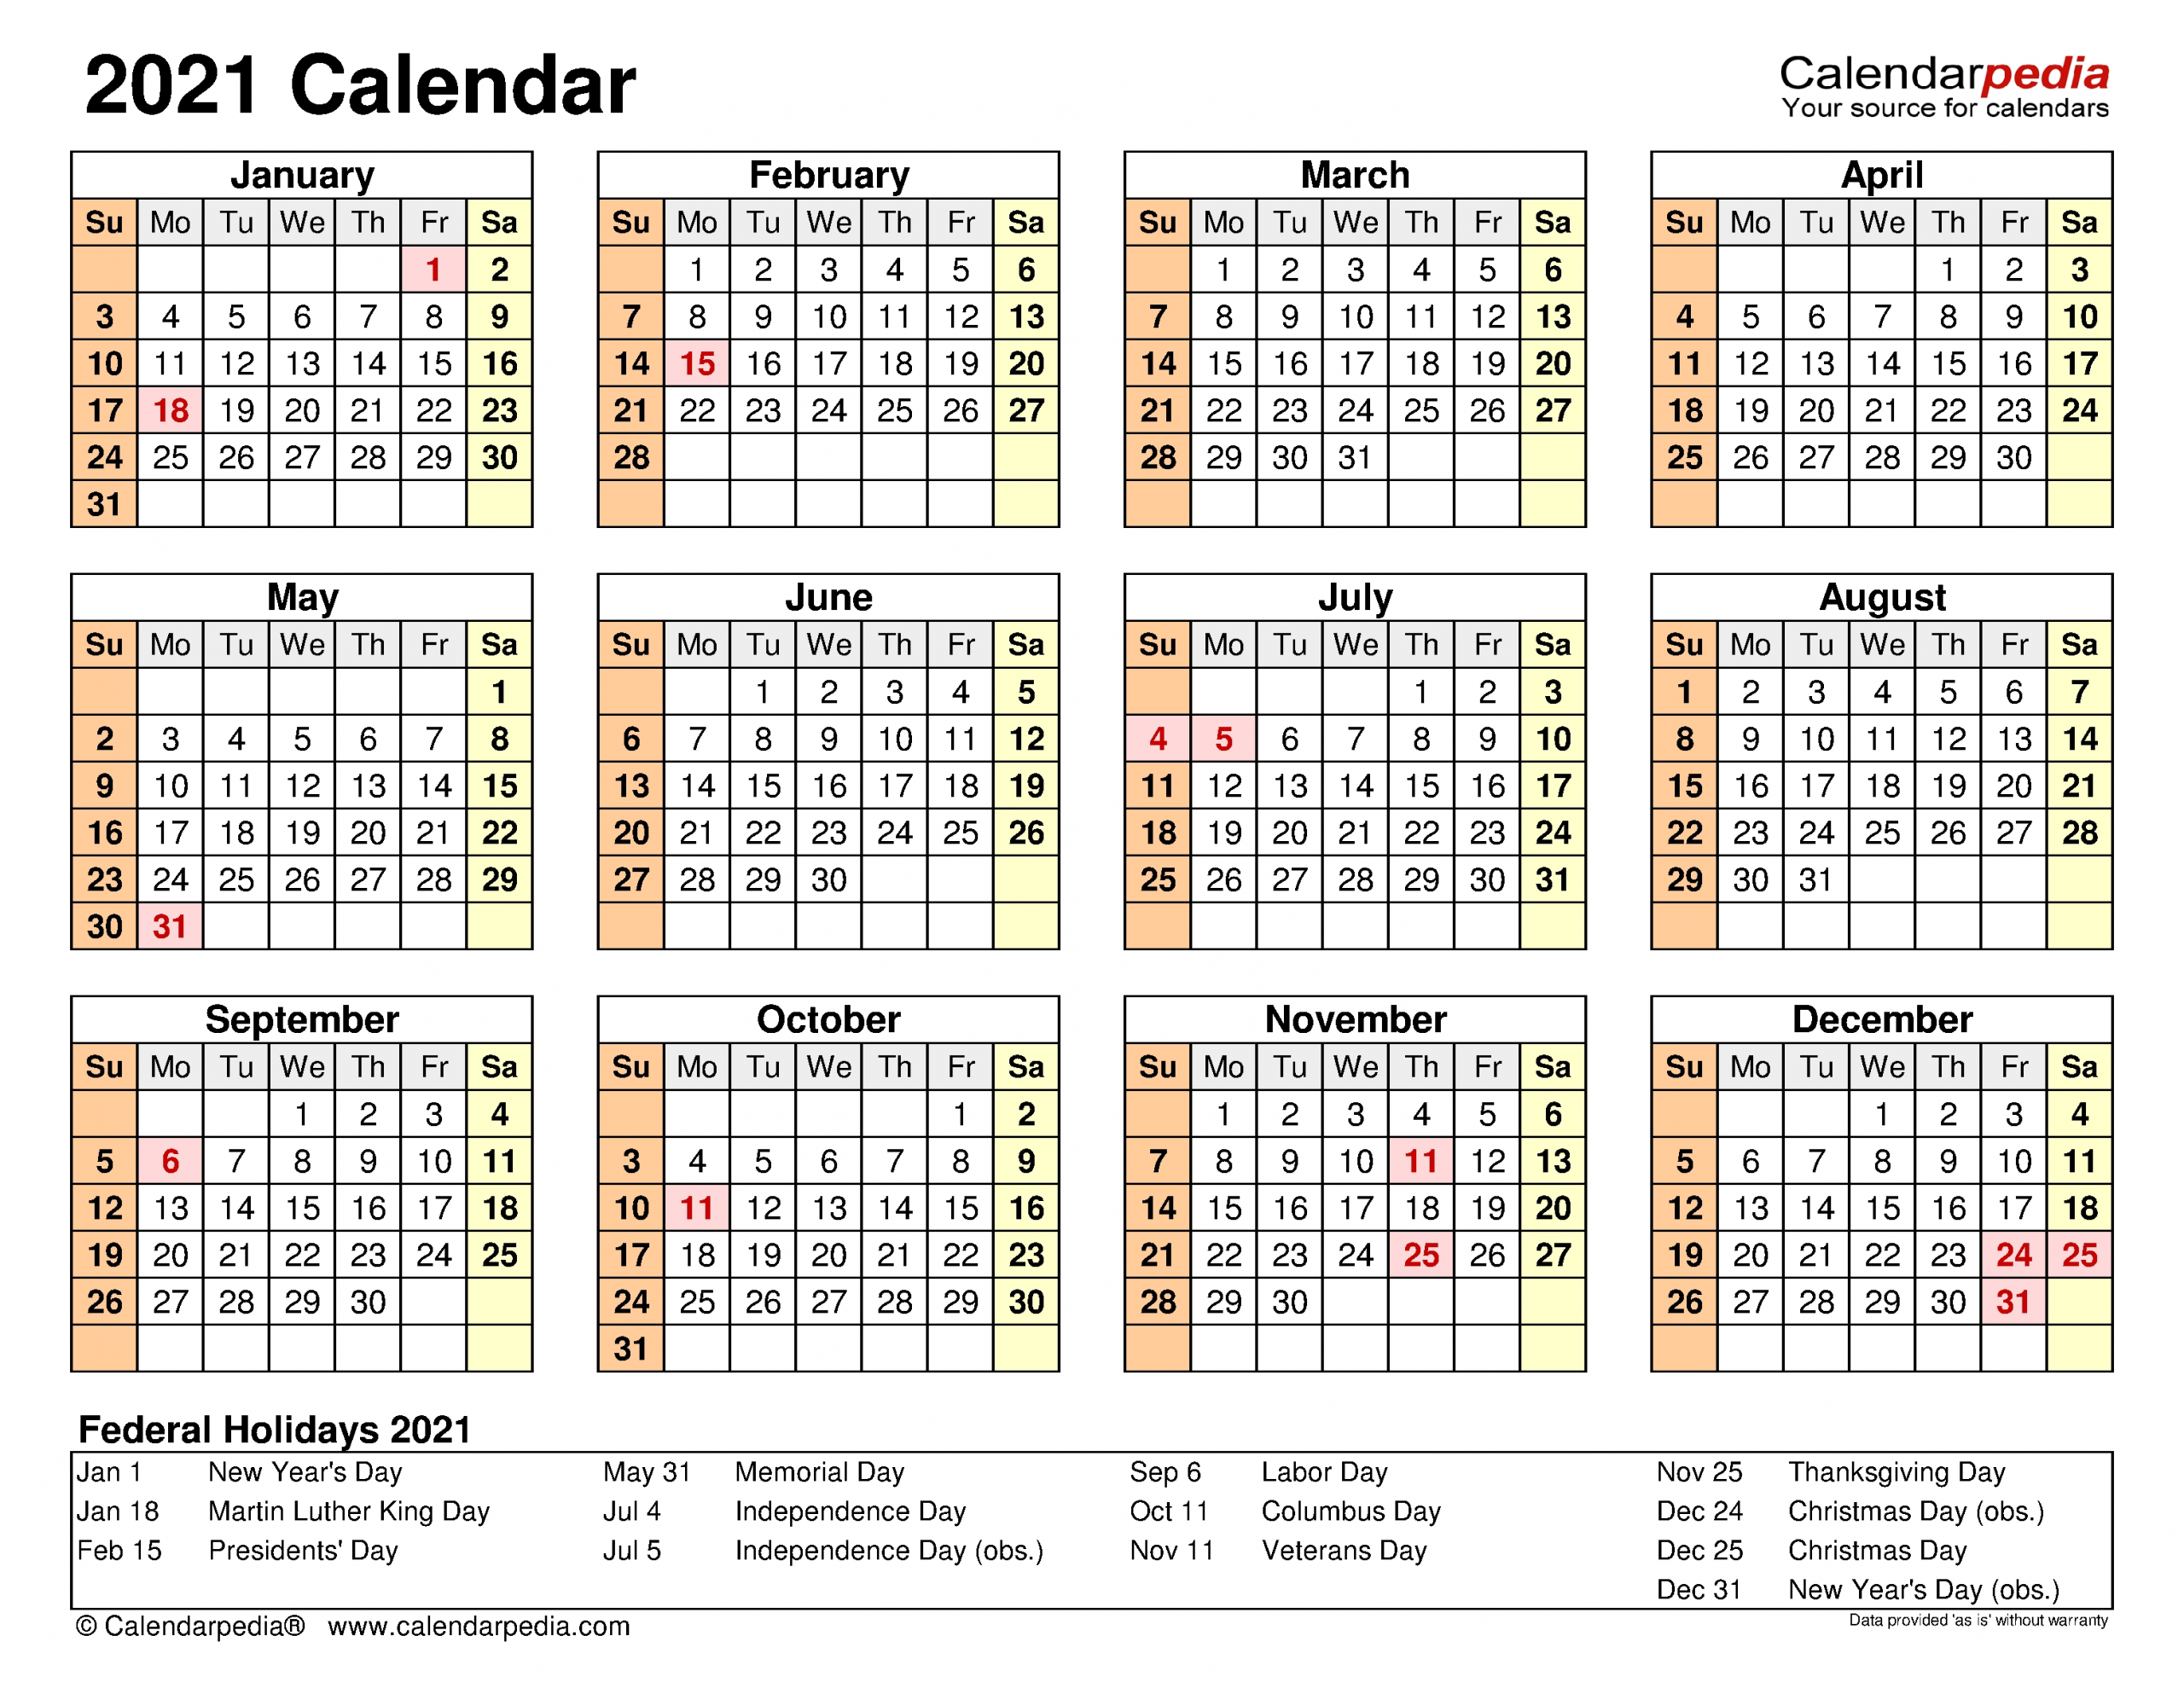 2021 Calendar - Free Printable Excel Templates - Calendarpedia-2021 Calendar In Excel By Week